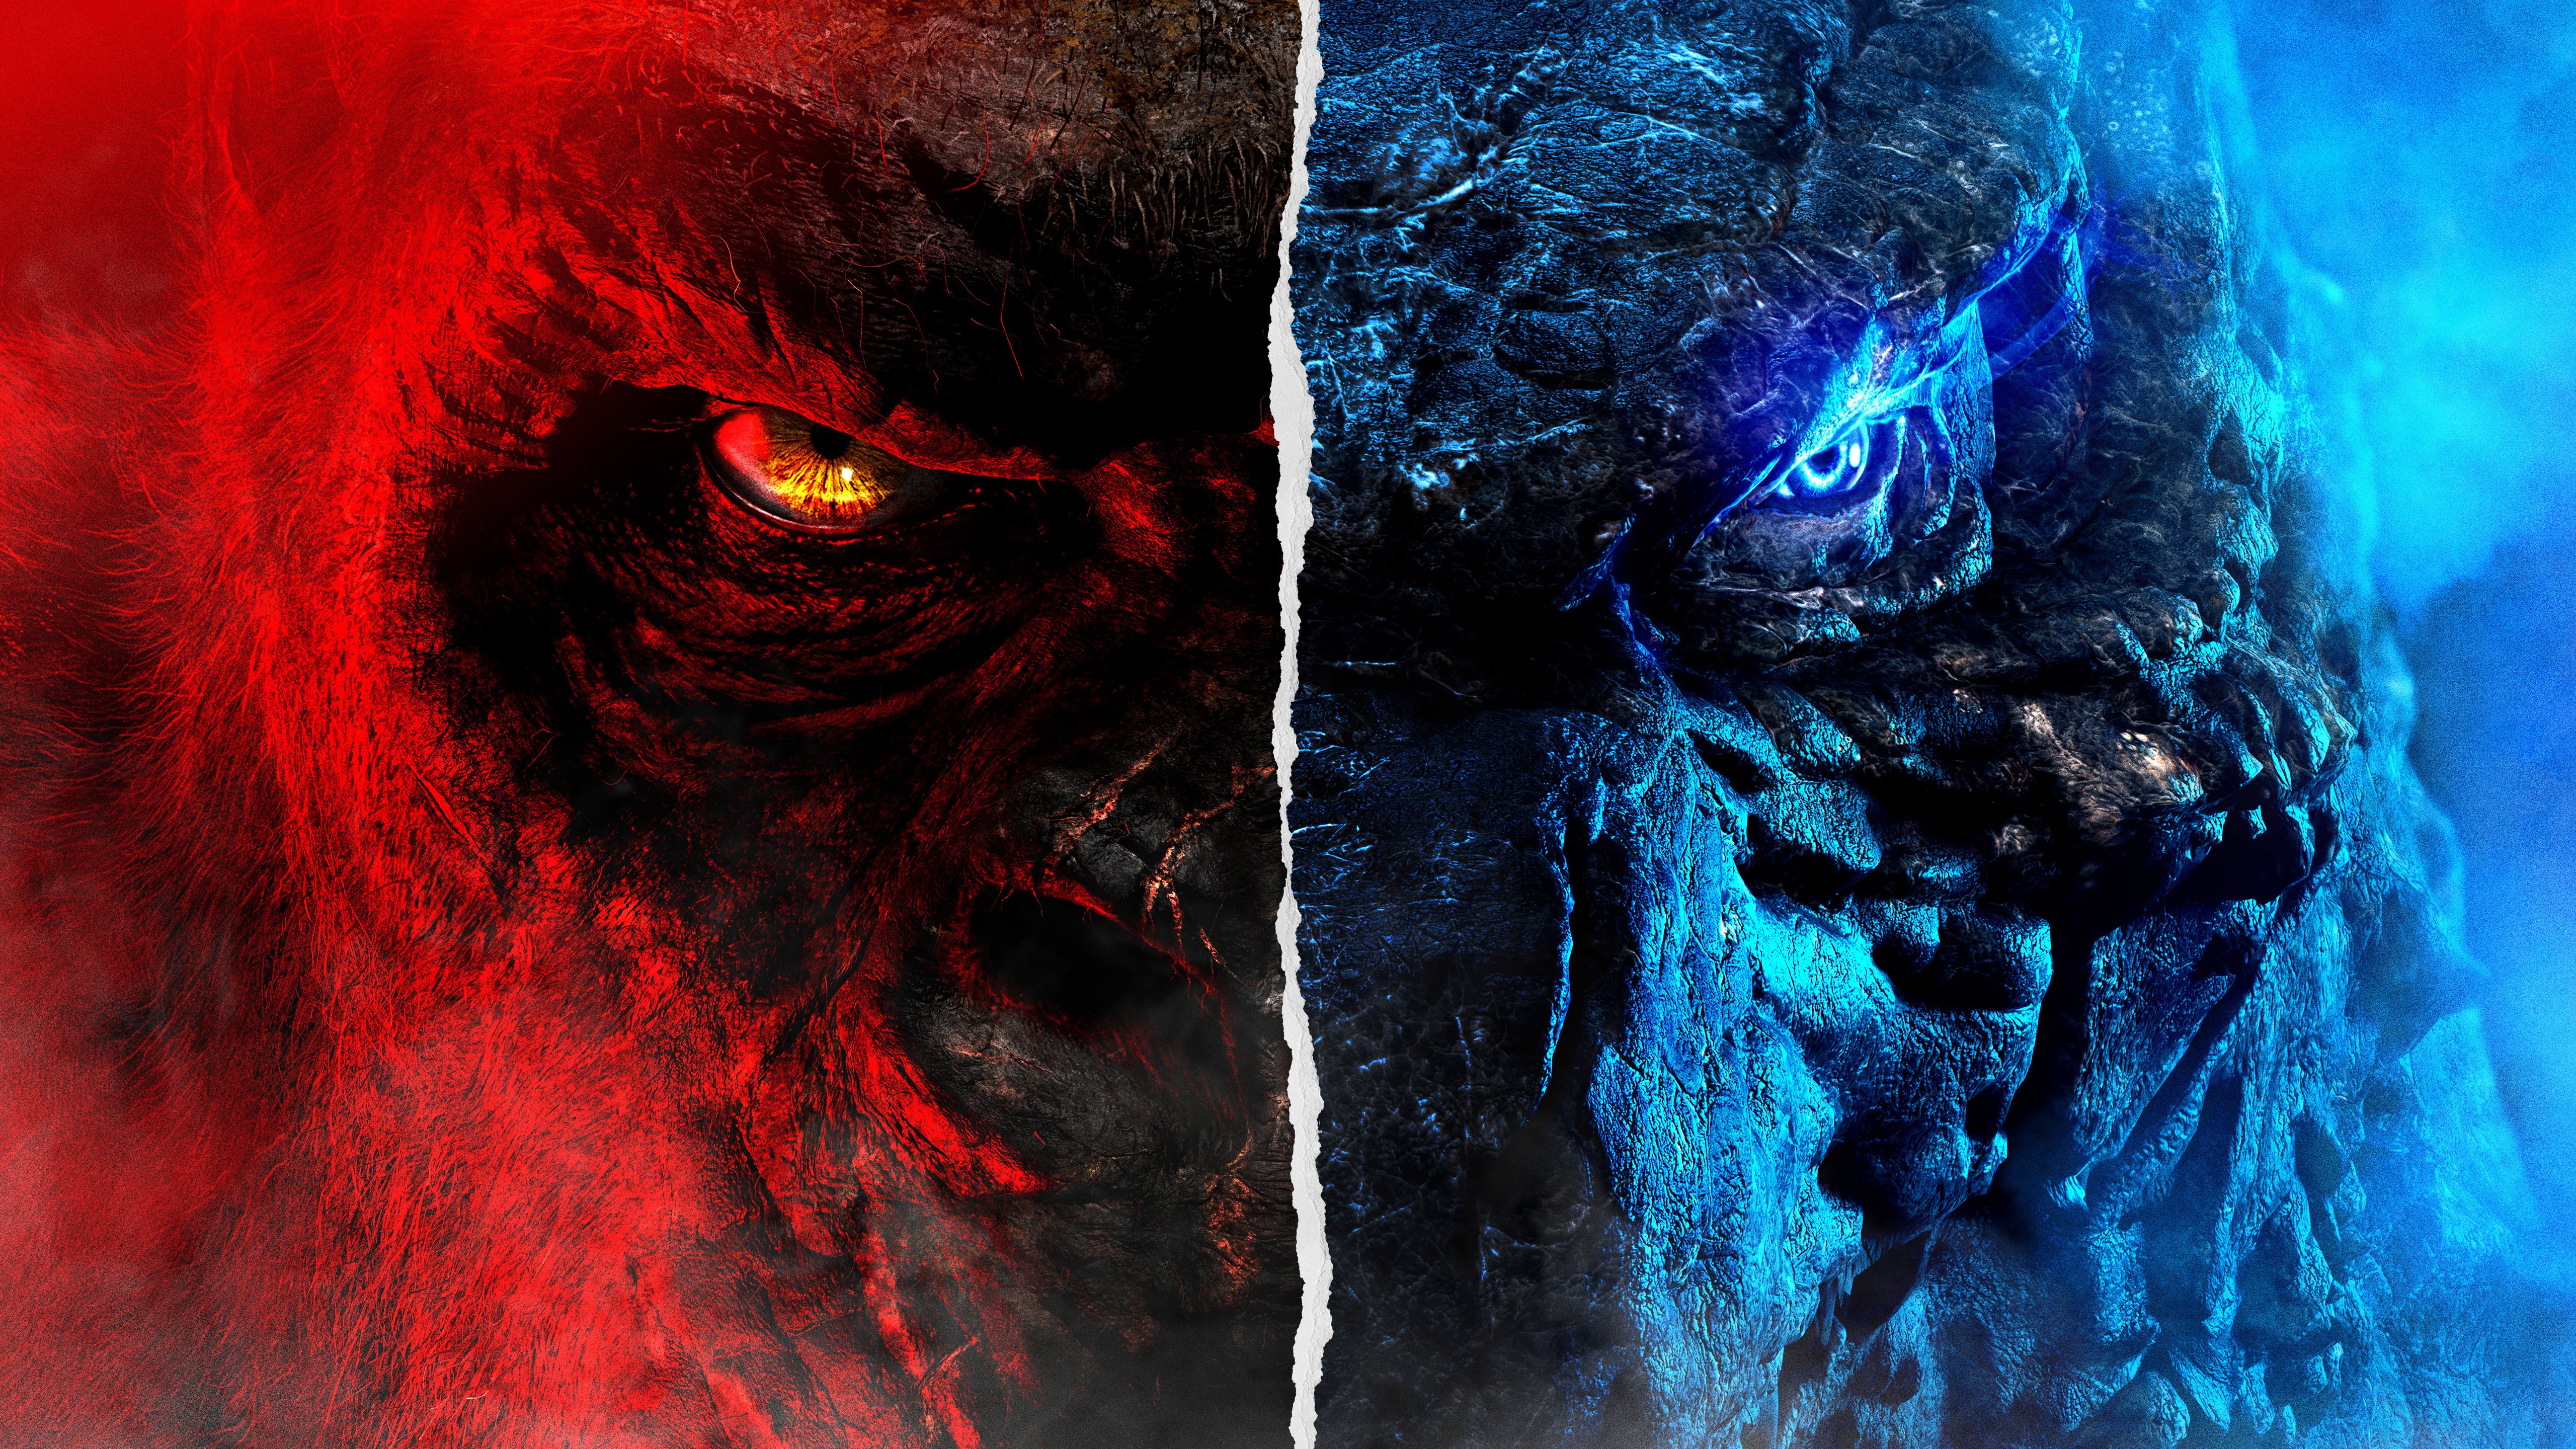 Xem ngay cuộc chiến giữa hai kẻ thù truyền kiếp Godzilla Vs Kong, với hình ảnh đẹp nhất và chất lượng cao nhất có thể.